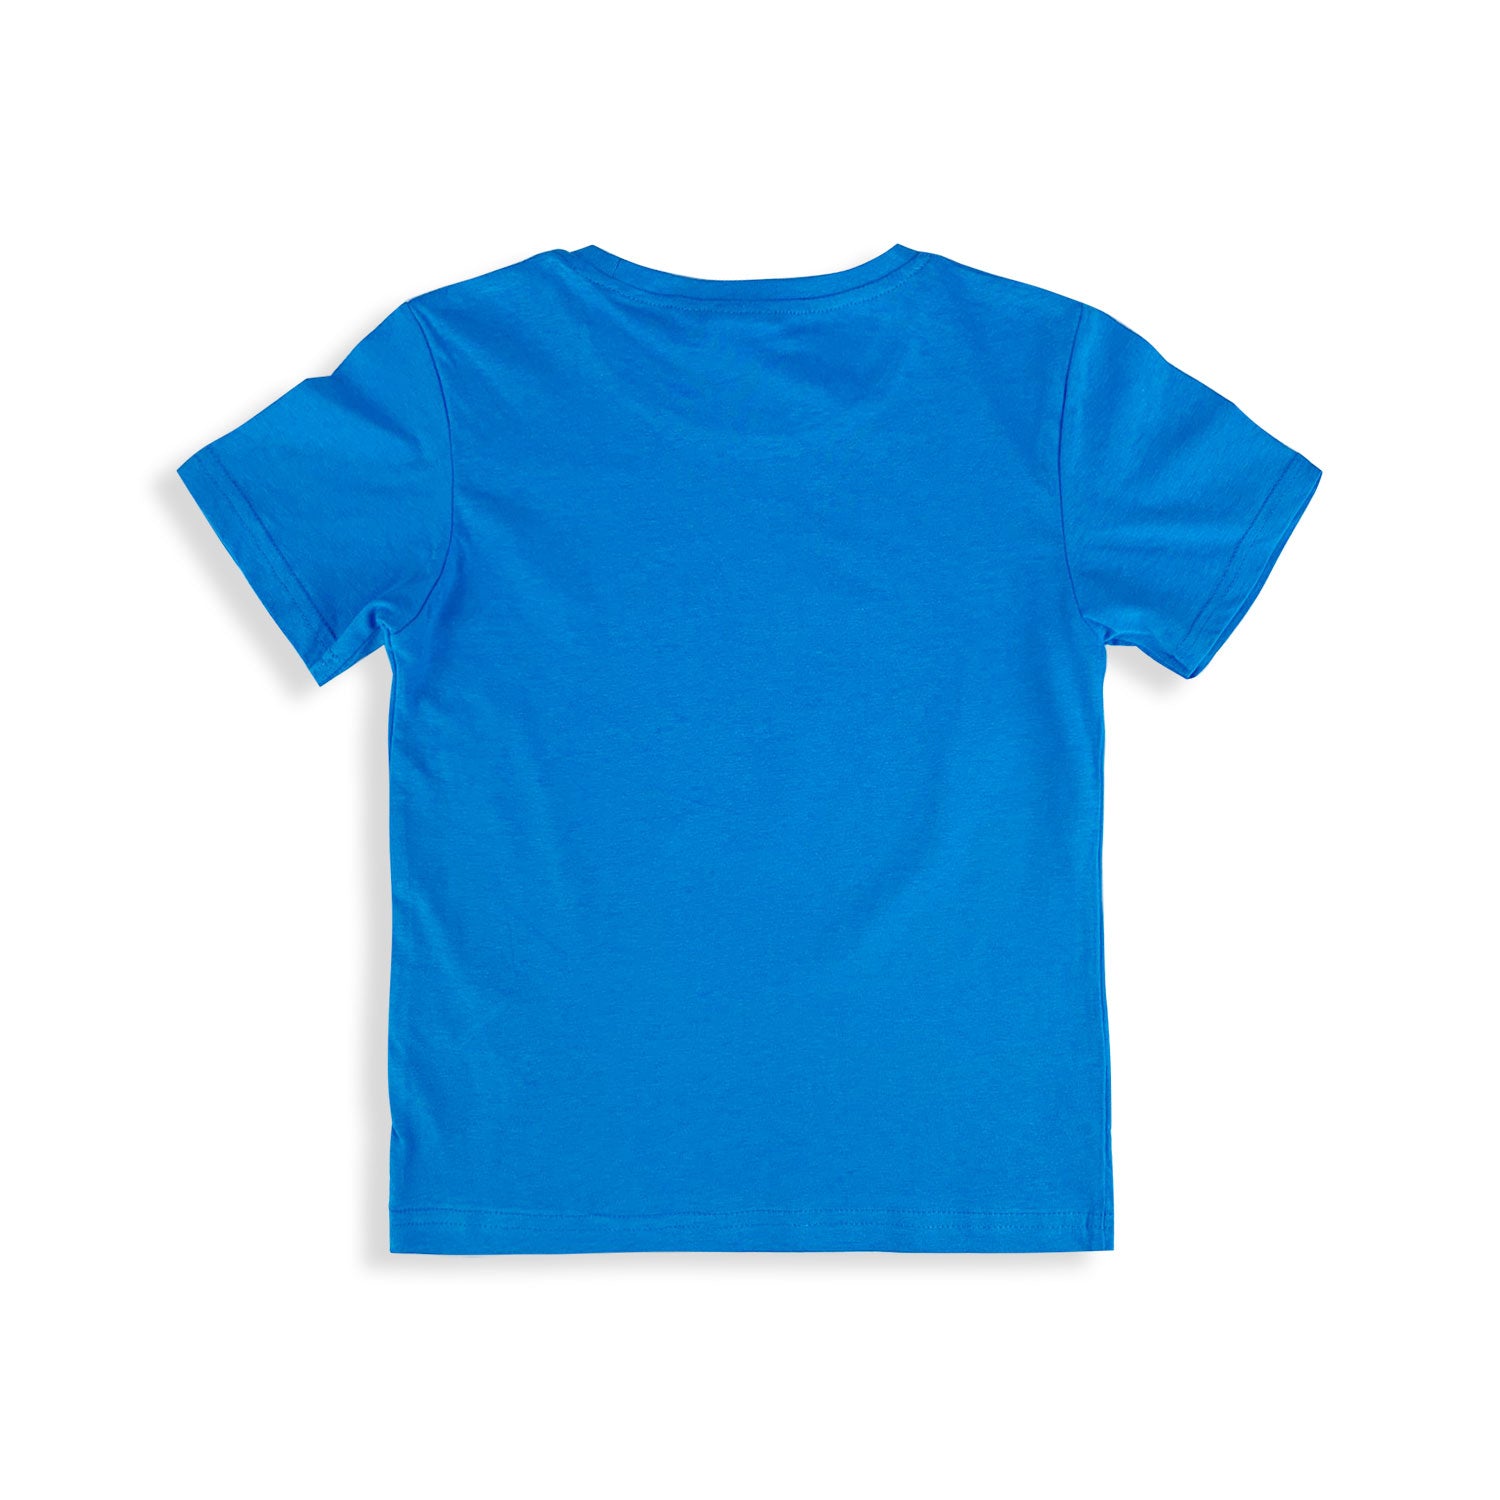 Maglietta Sonic t-shirt bambino maglia mezze maniche in cotone estivo 5430